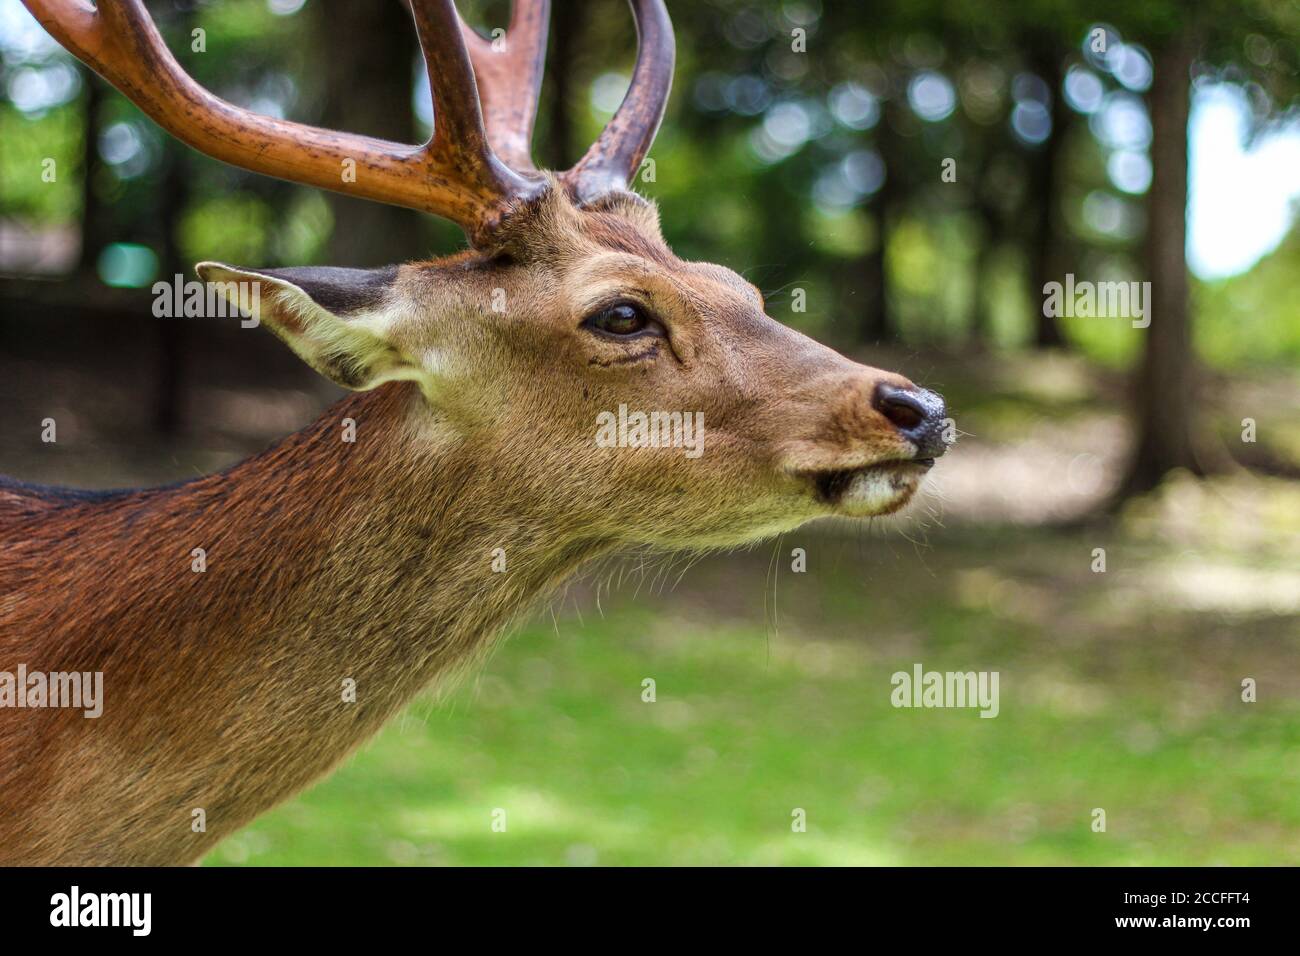 Profile shot of a deer at Nara Deer Park in Japan Stock Photo